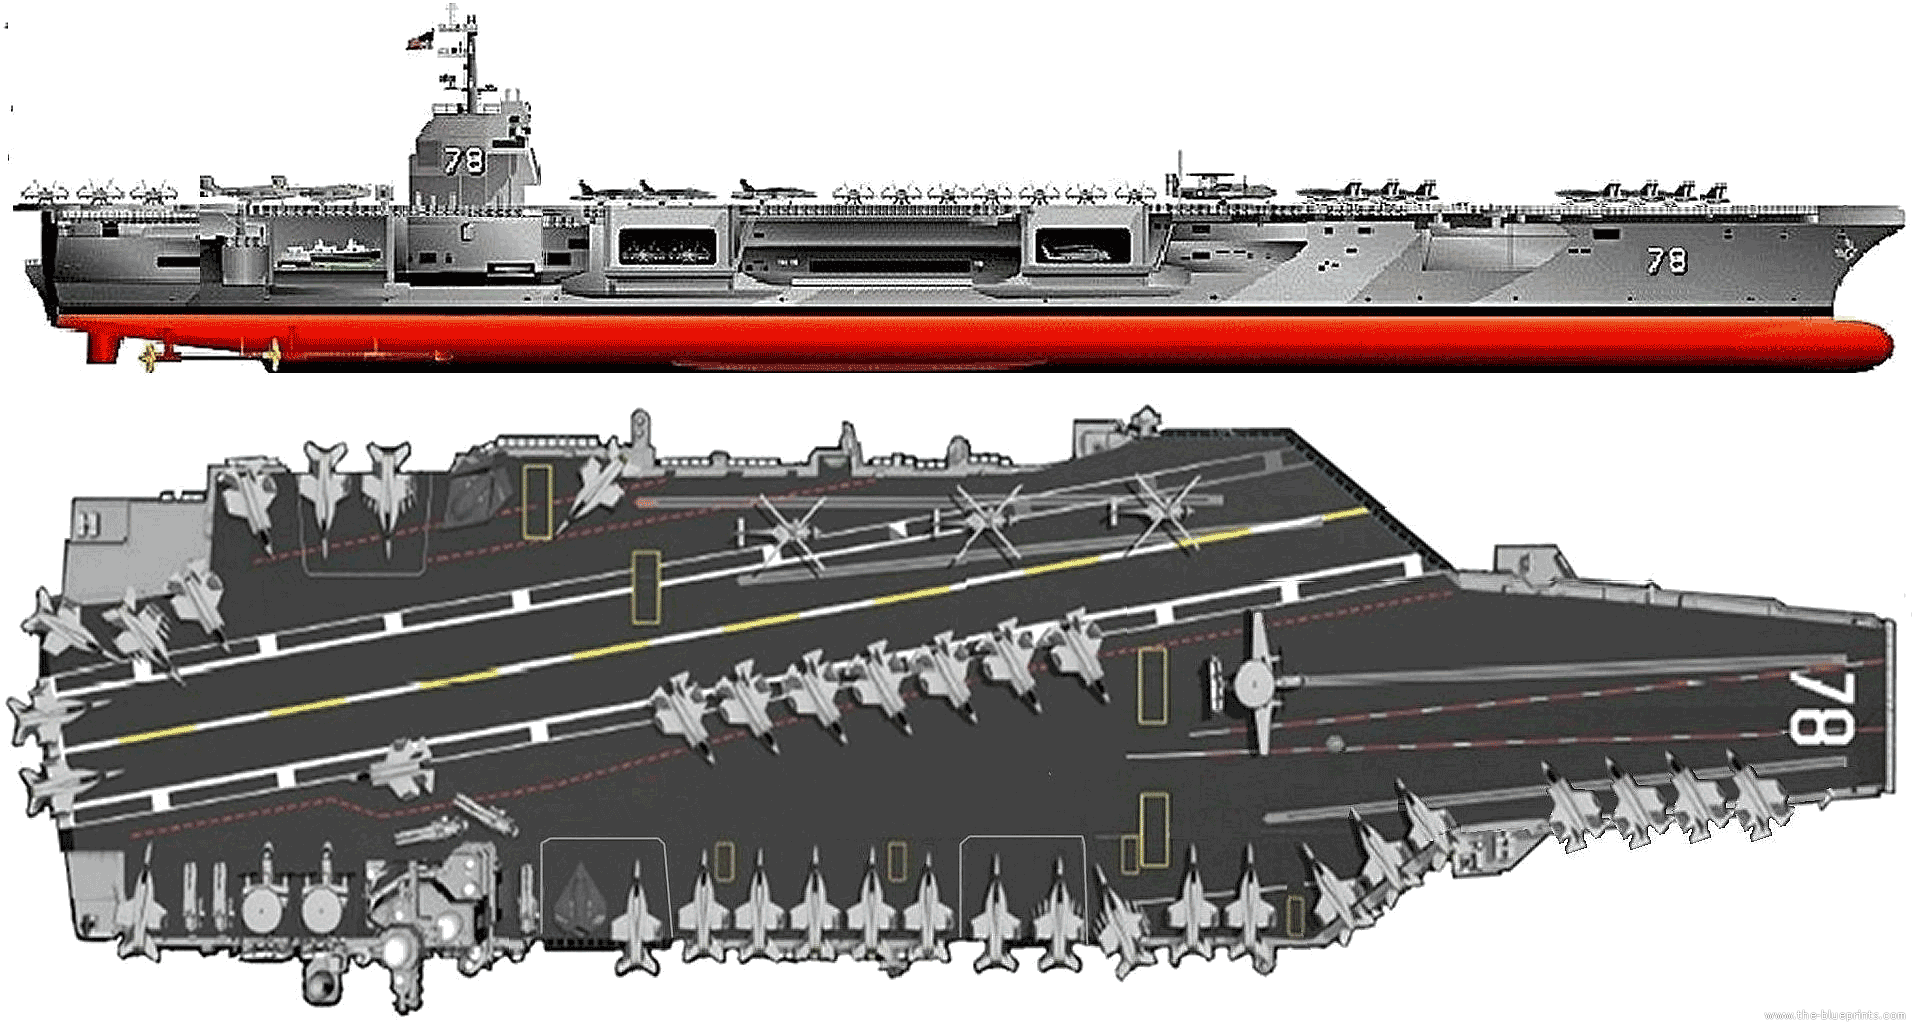 Uss gerald ford class aircraft carrier #4